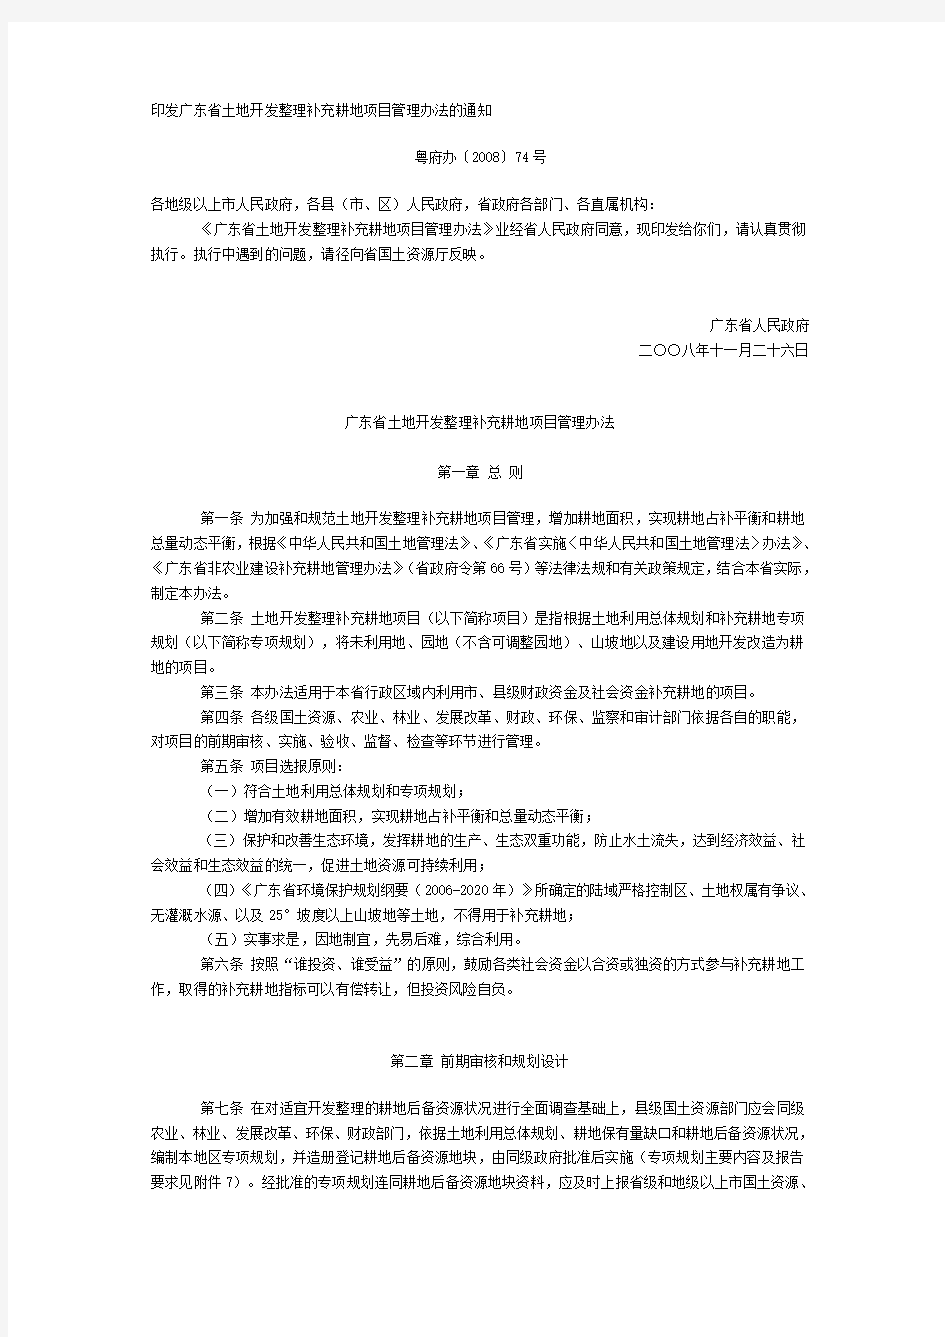 广东省土地开发整理补充耕地项目管理办法